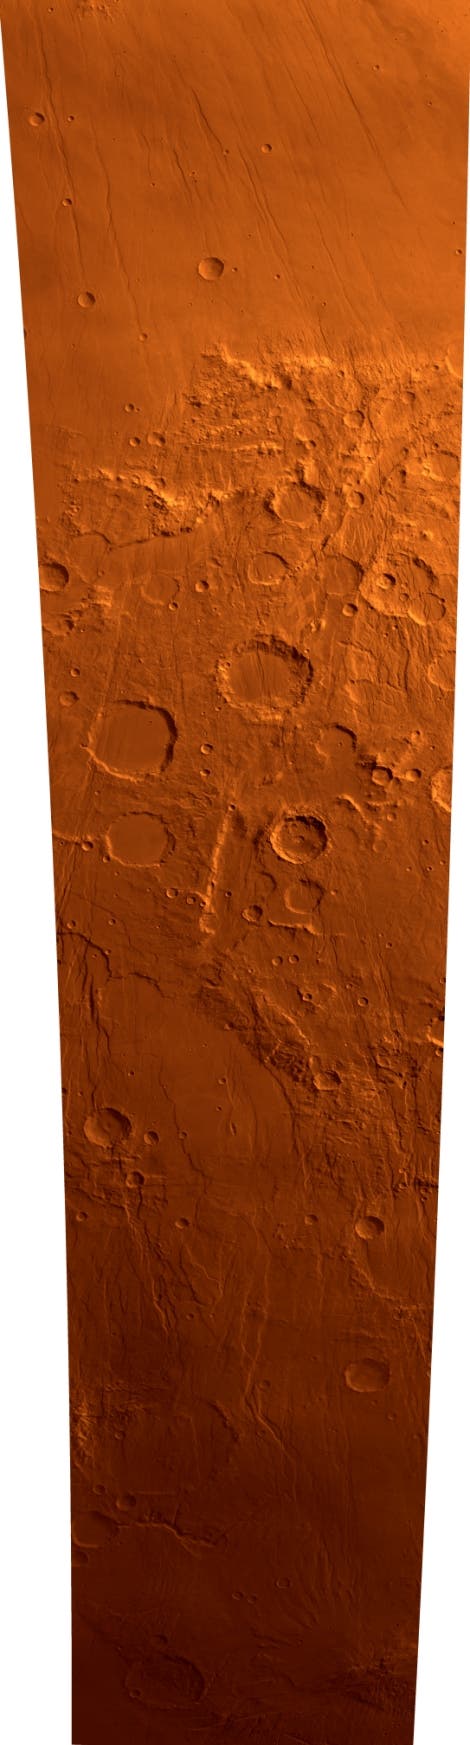 Mars hochaufgelöst: Das Claritas-Fossae-Hochland